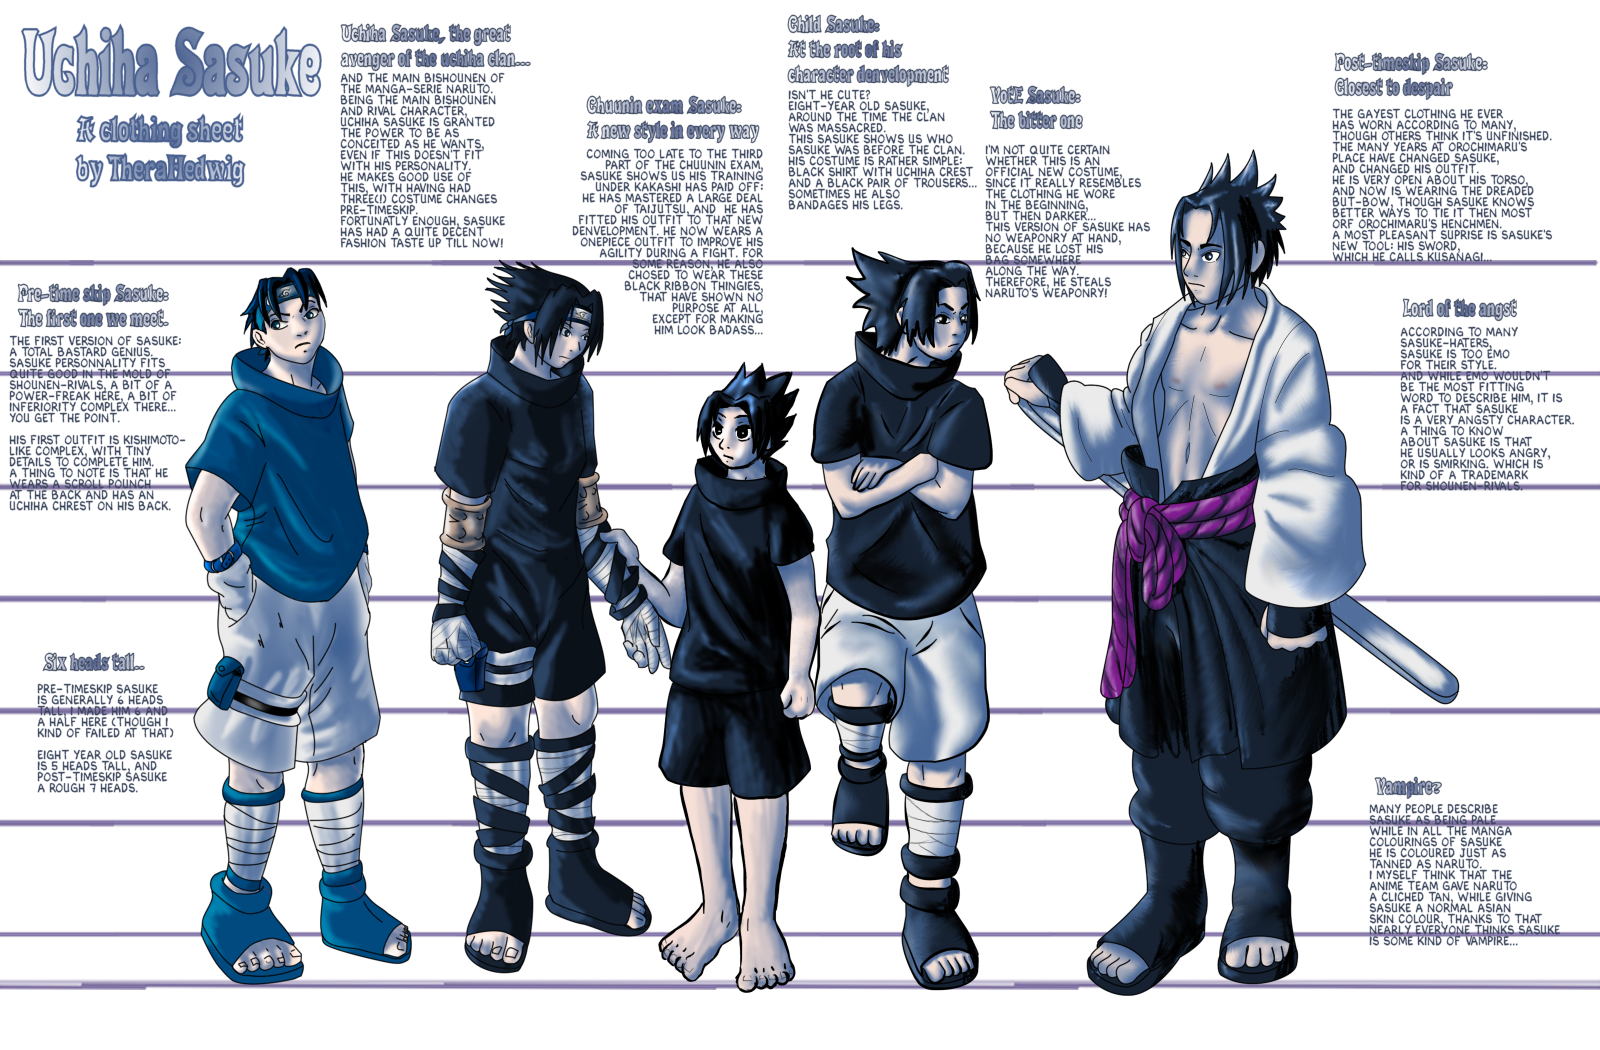  Uchiha Sasuke Fight Character Model Classic Anime